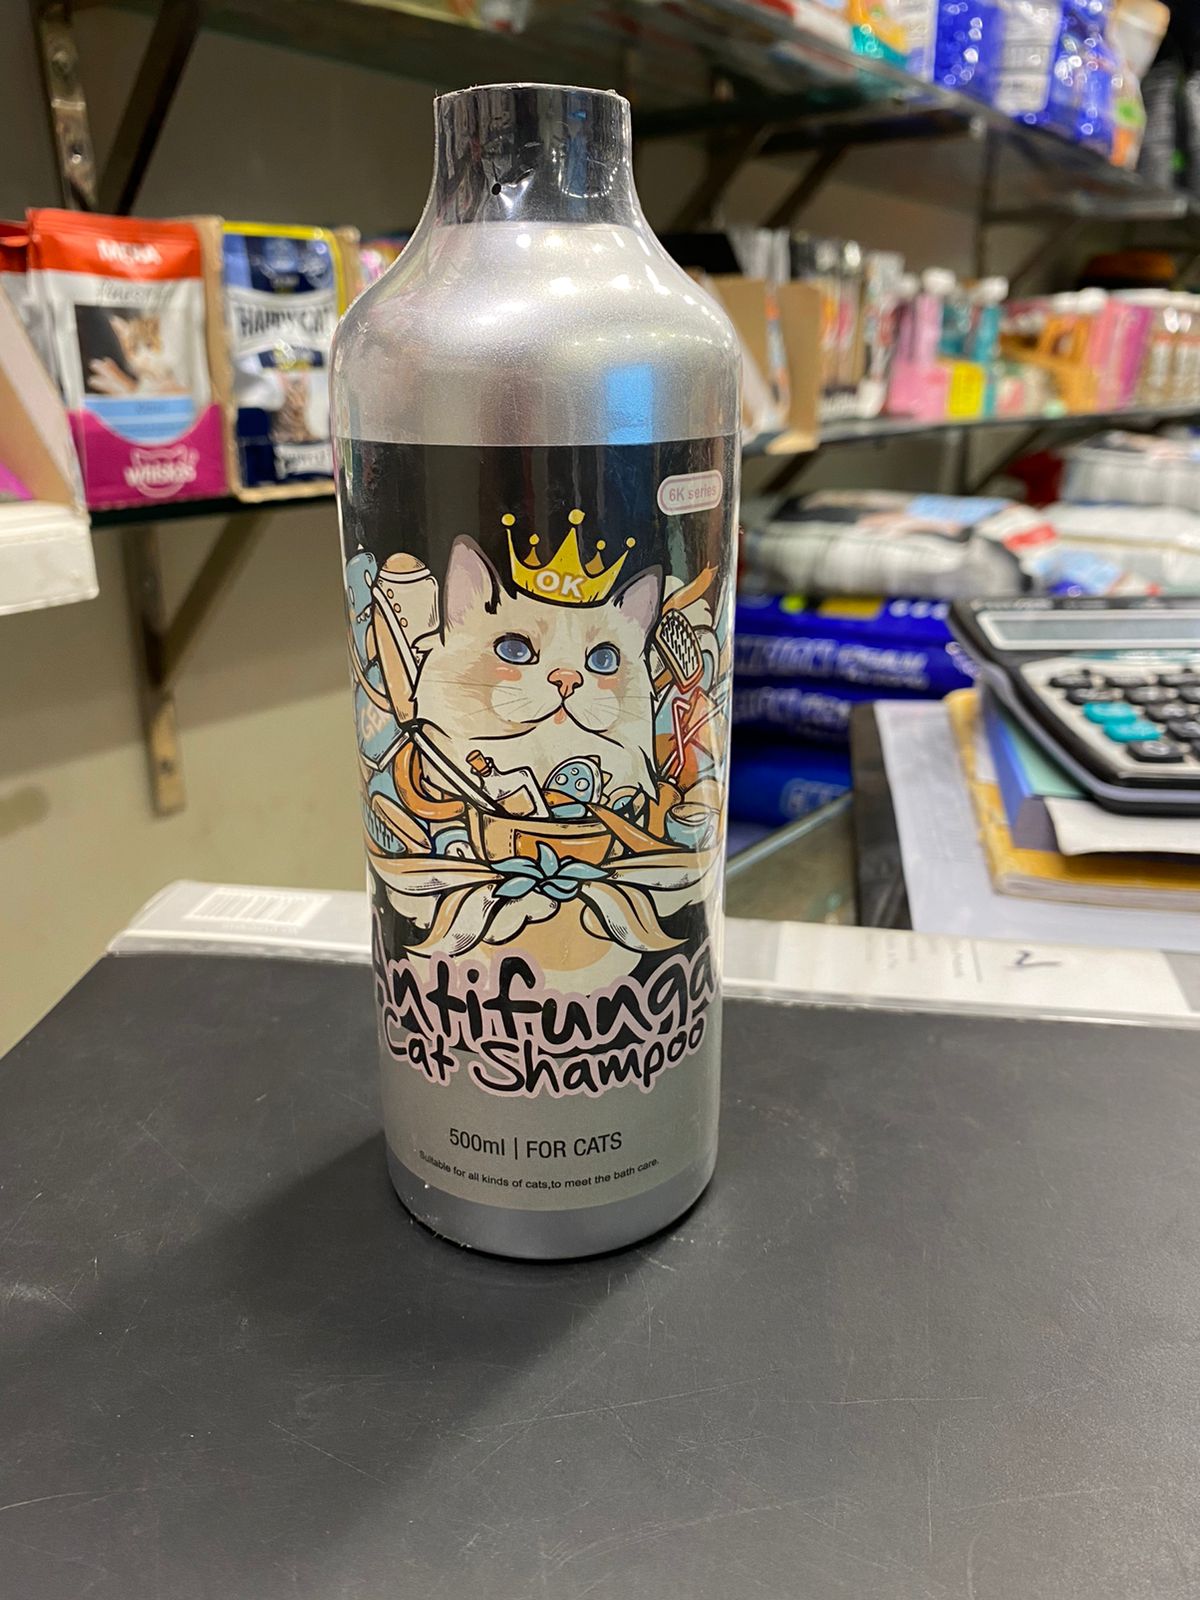 Whitening cat shampoo (500ml) 